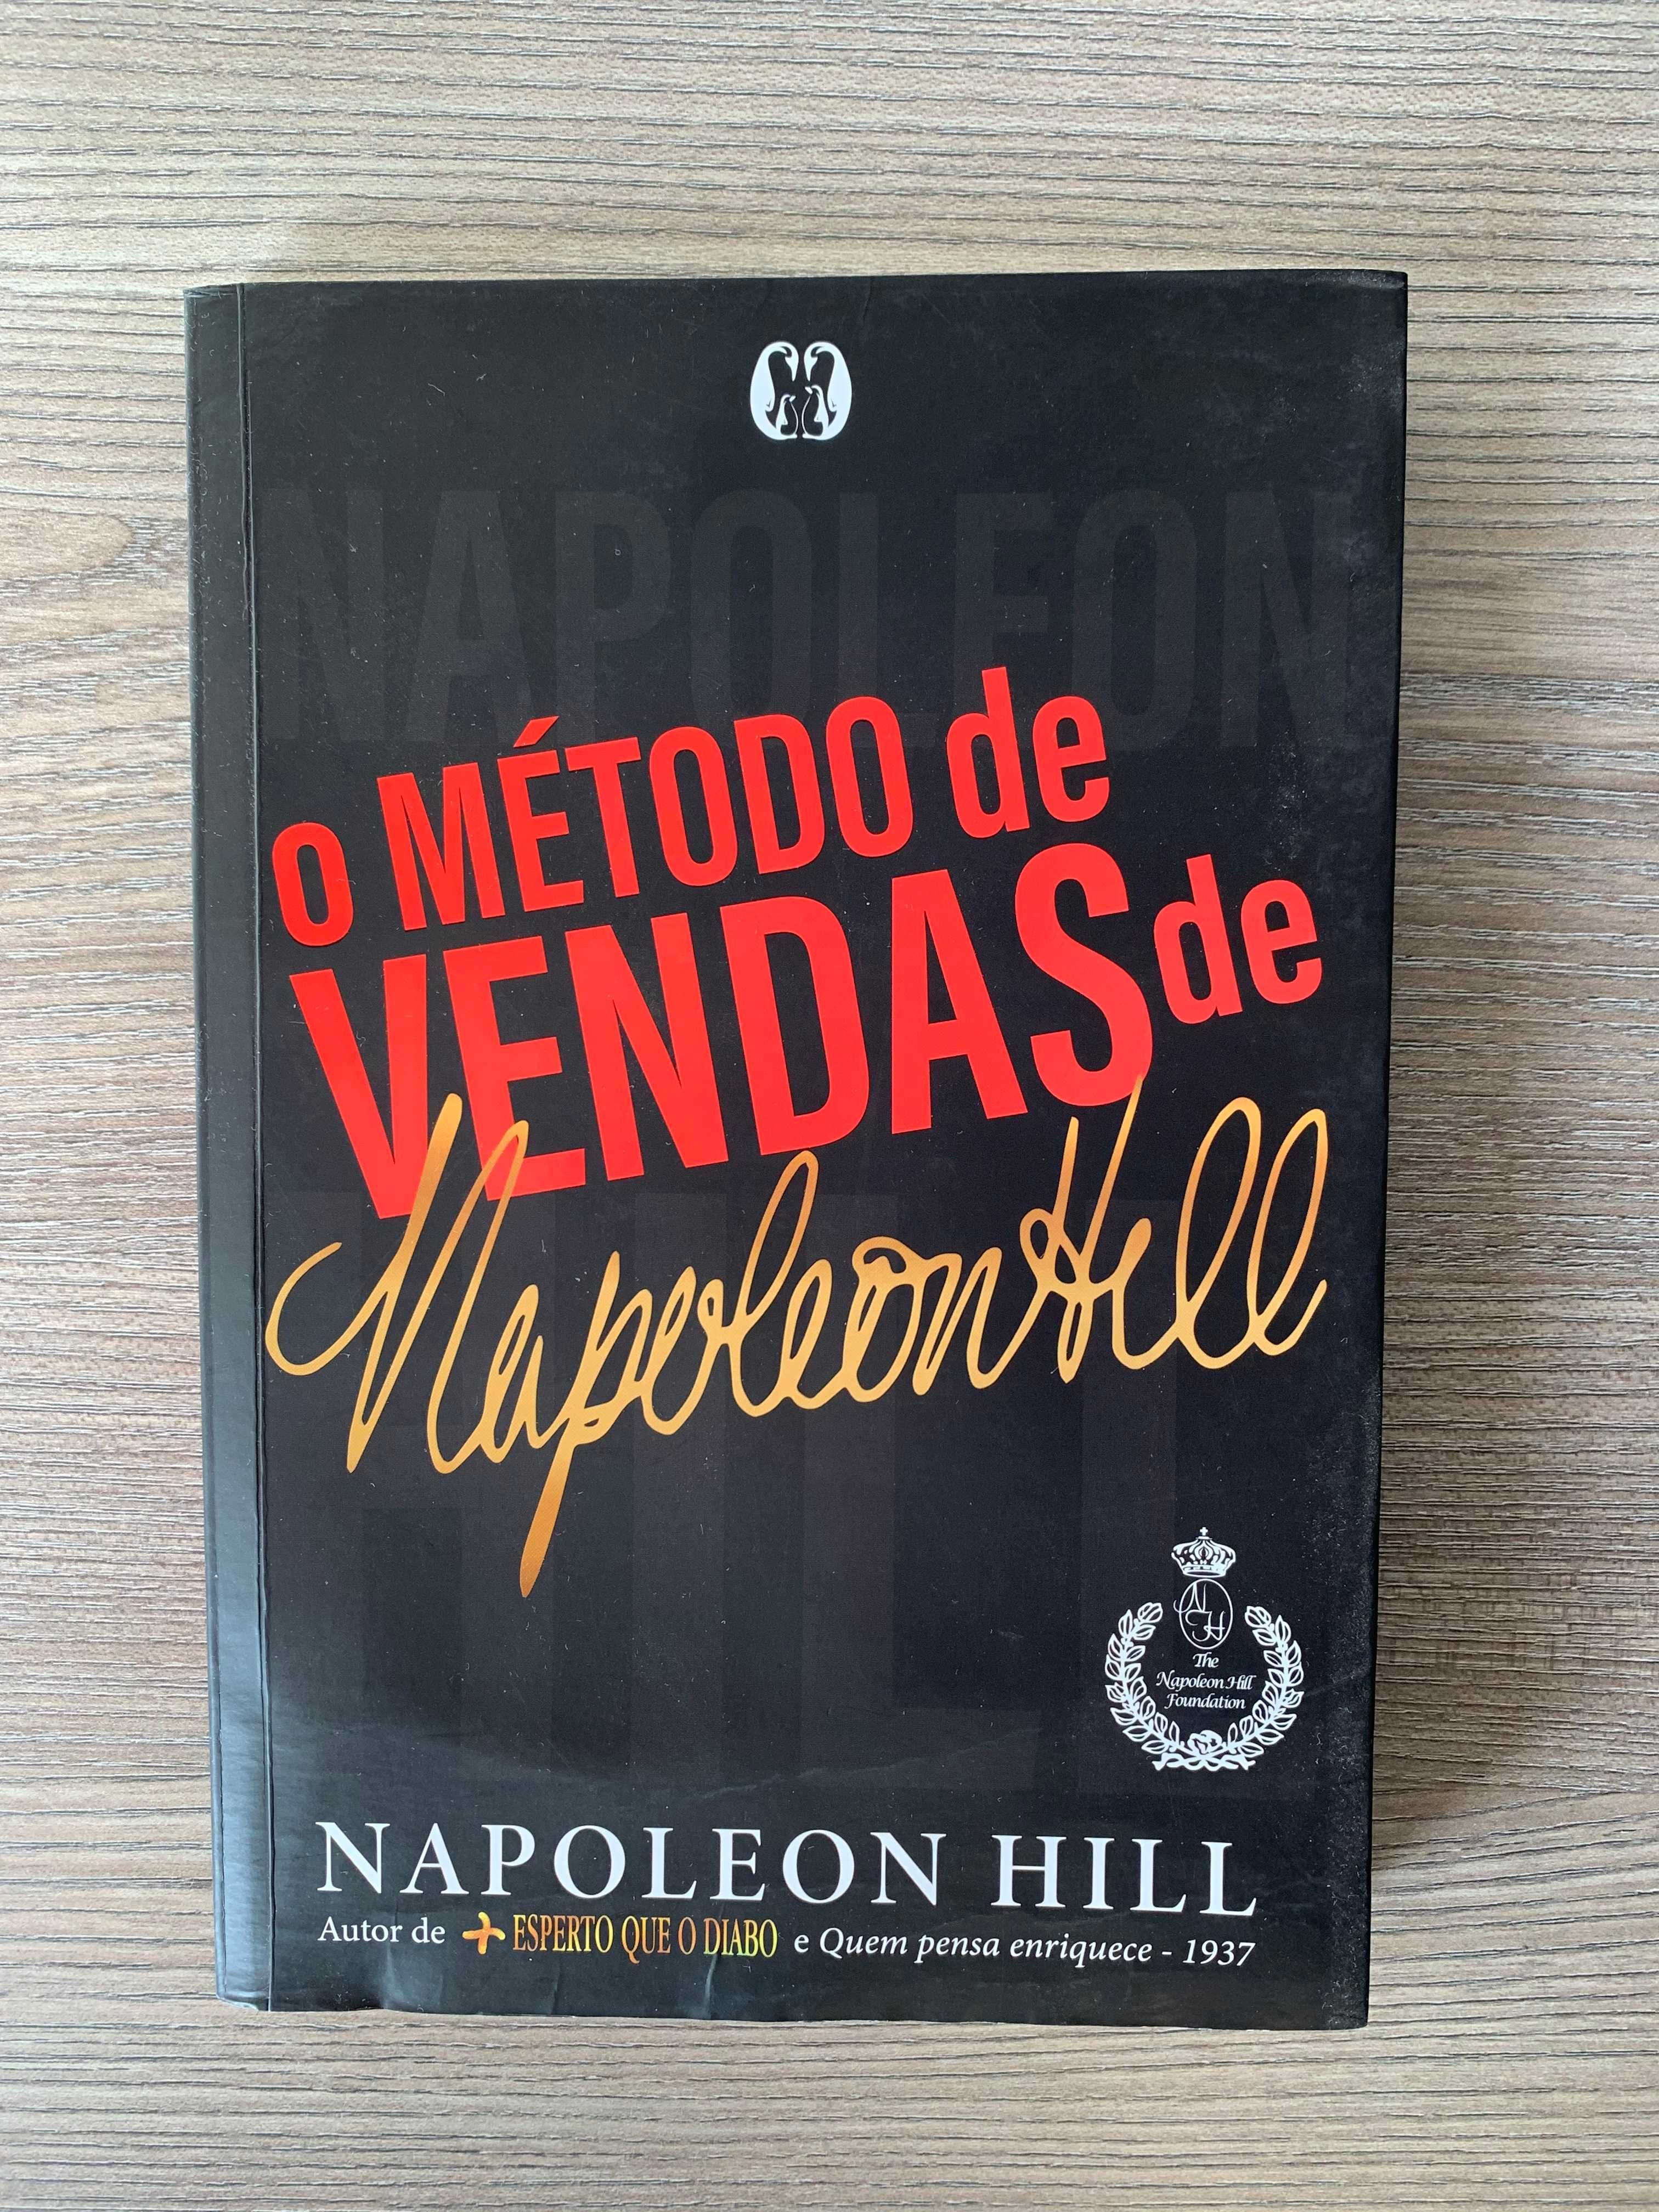 O método de vendas de Napoleon Hill